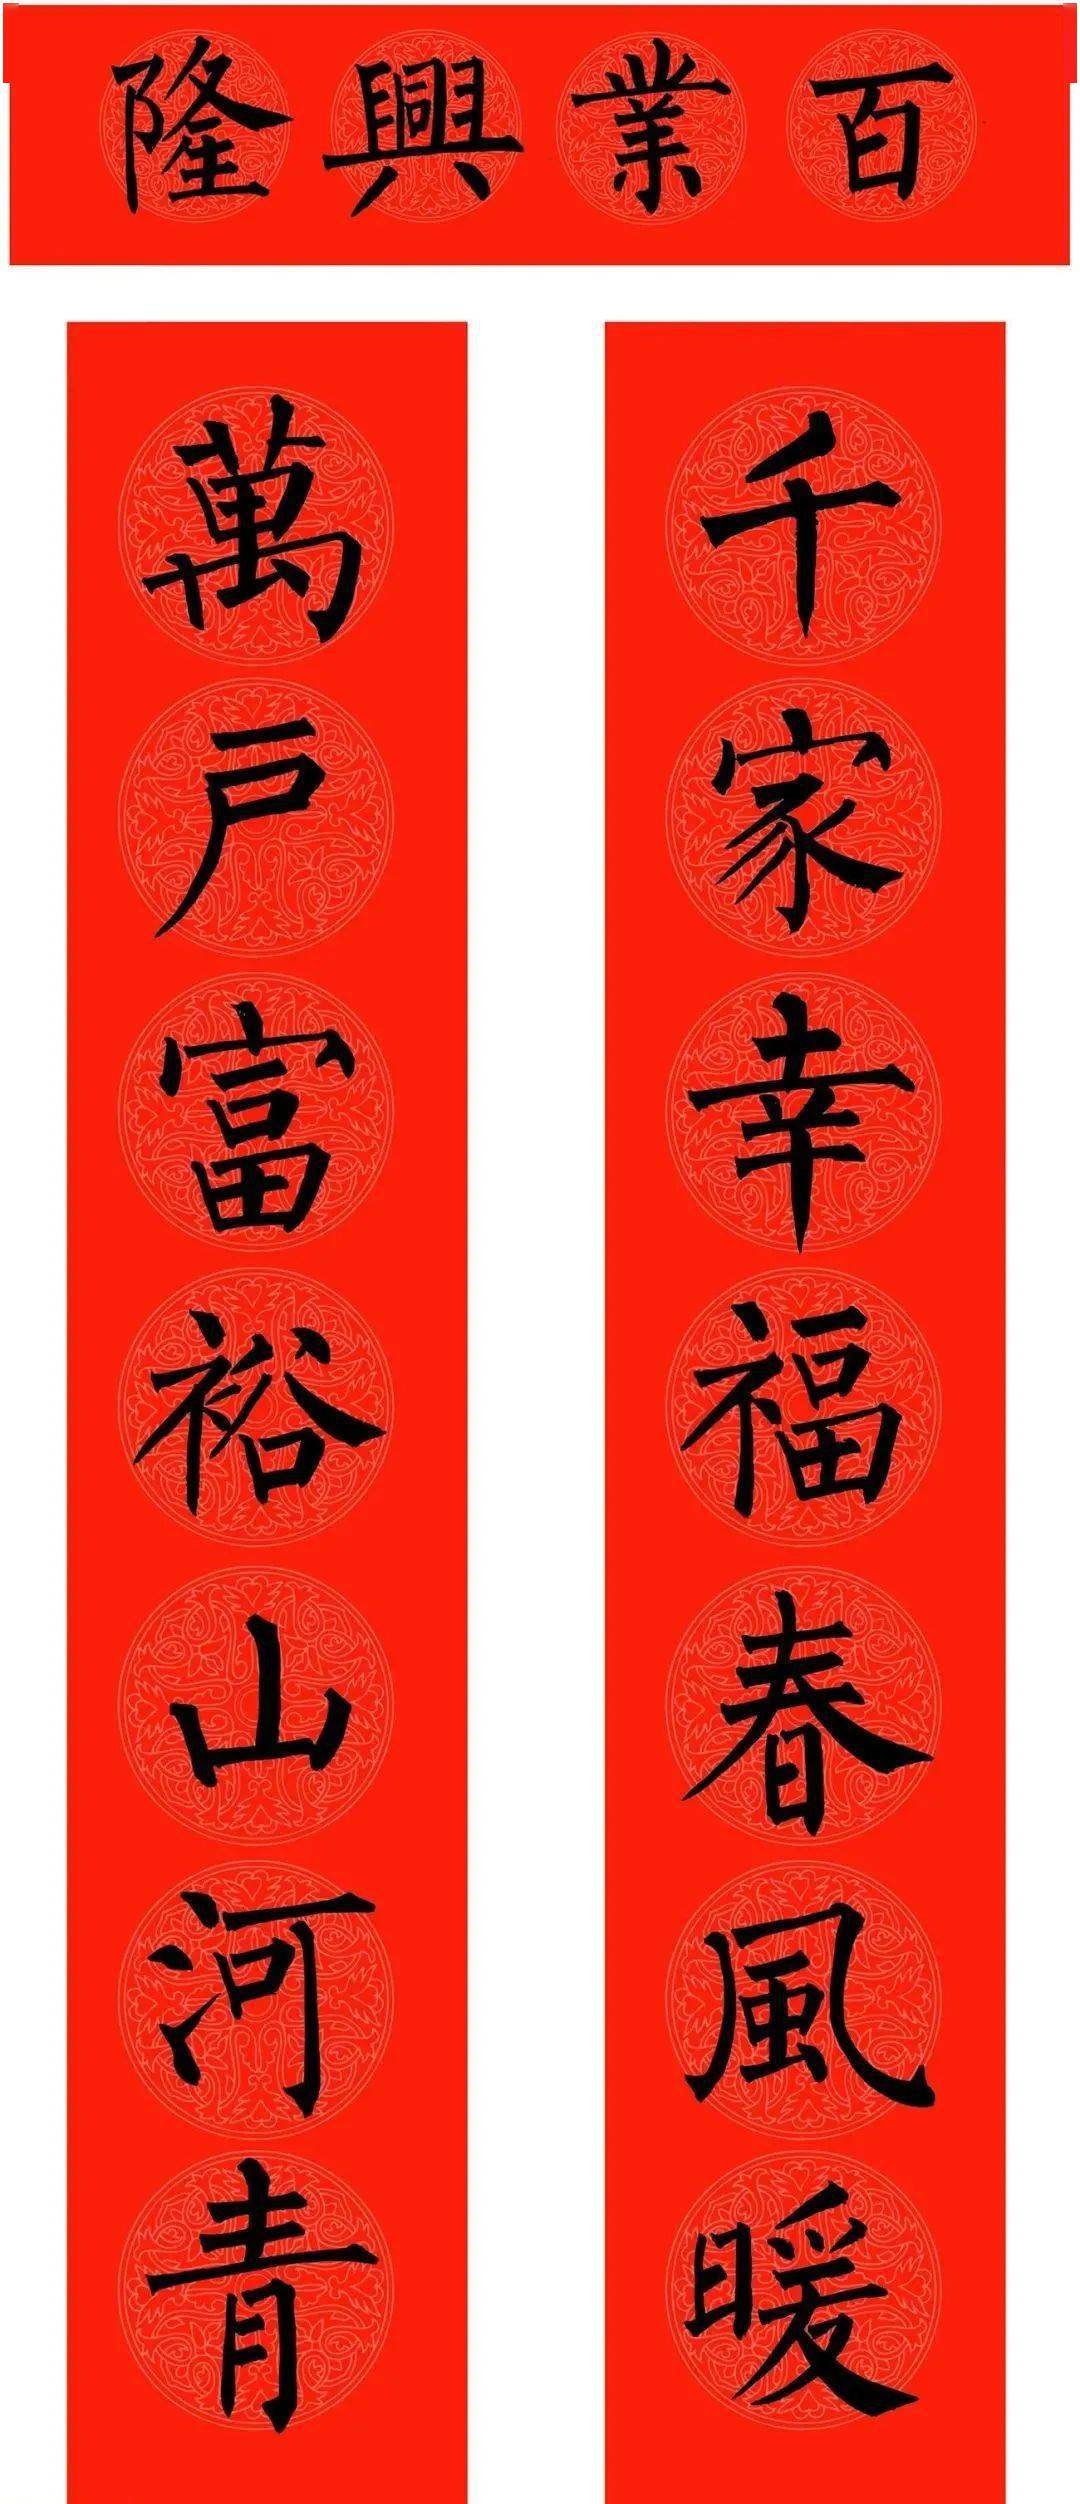 二零二一年春节将近,范笑歌先生书写了三副春联,这三幅春联分别是楷书